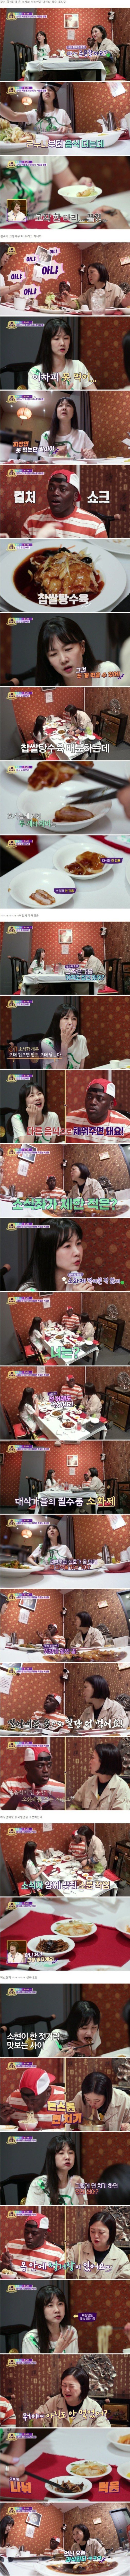 박소현 식사하는 모습